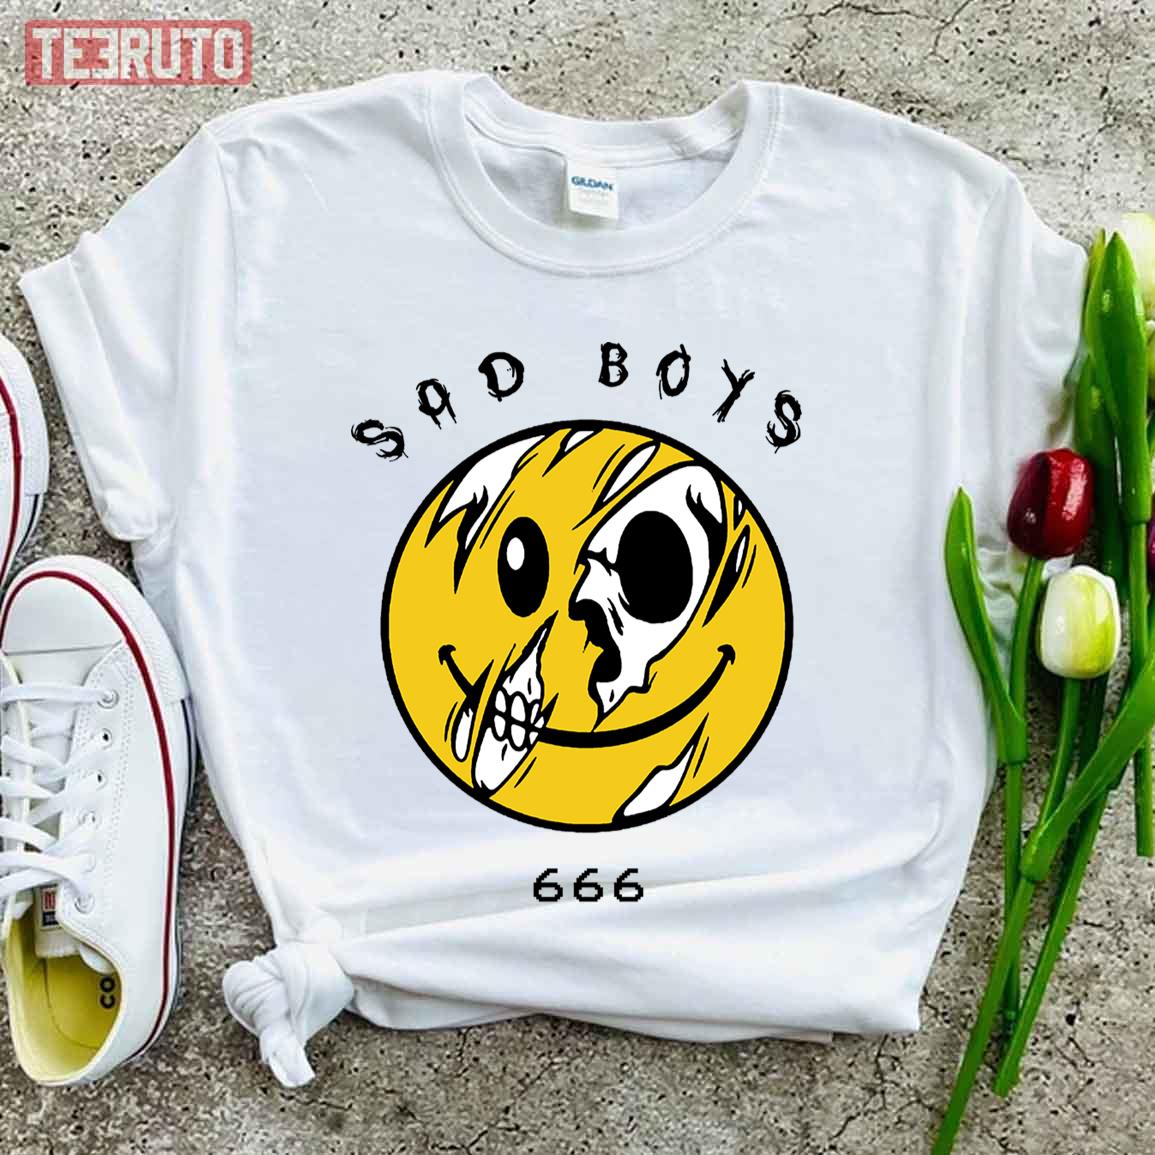 Sad Boys 666 Xavier Wulf Unisex T-Shirt